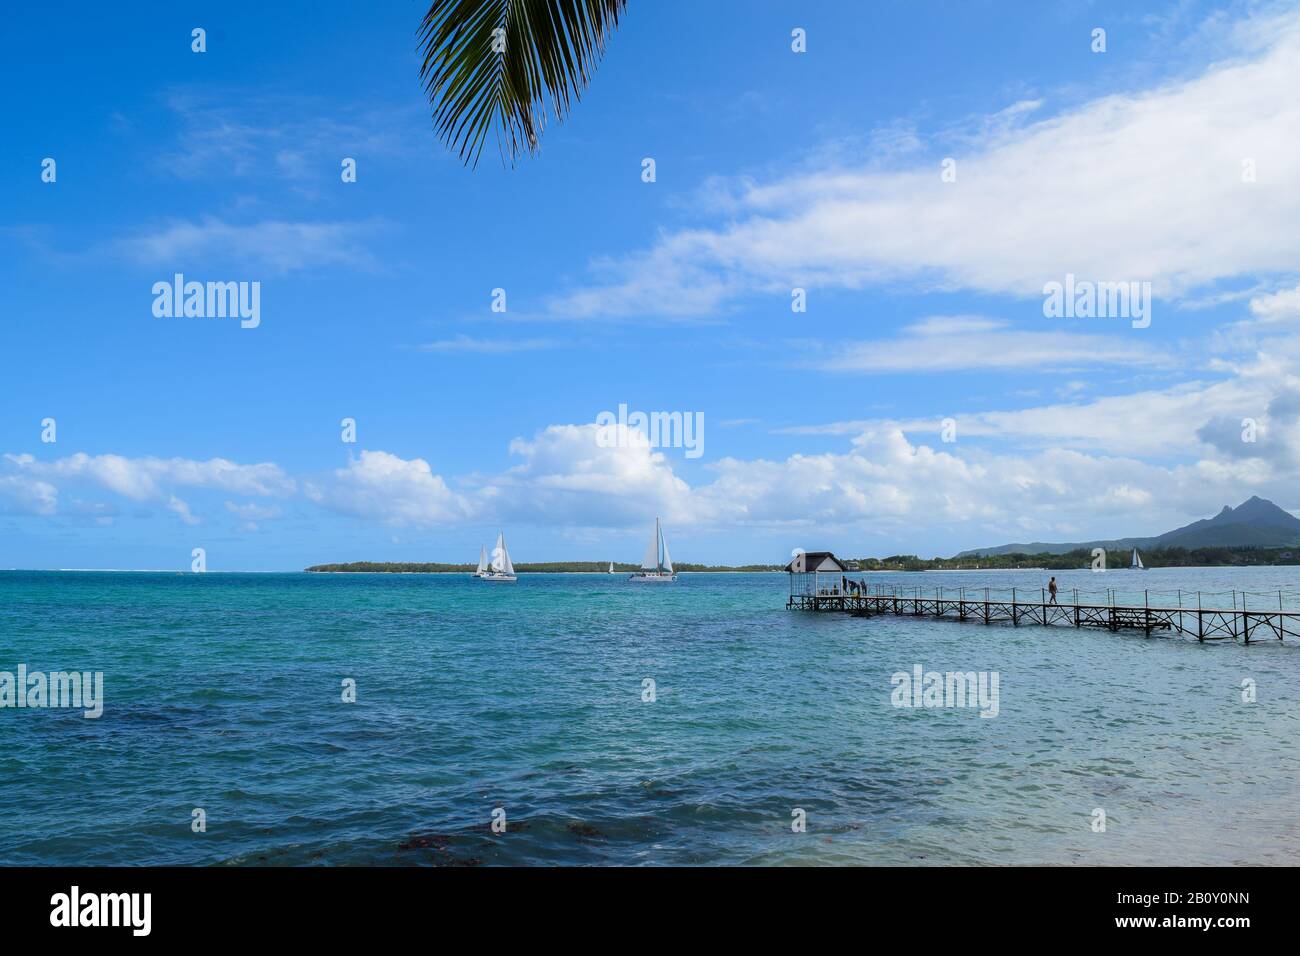 Ruhiger Strand: Ich habe dieses Bild gemacht, während ich einen Blick auf ein Resort auf dem Meer hatte, dachte, dass die Kulisse schön und so friedlich war. Stockfoto